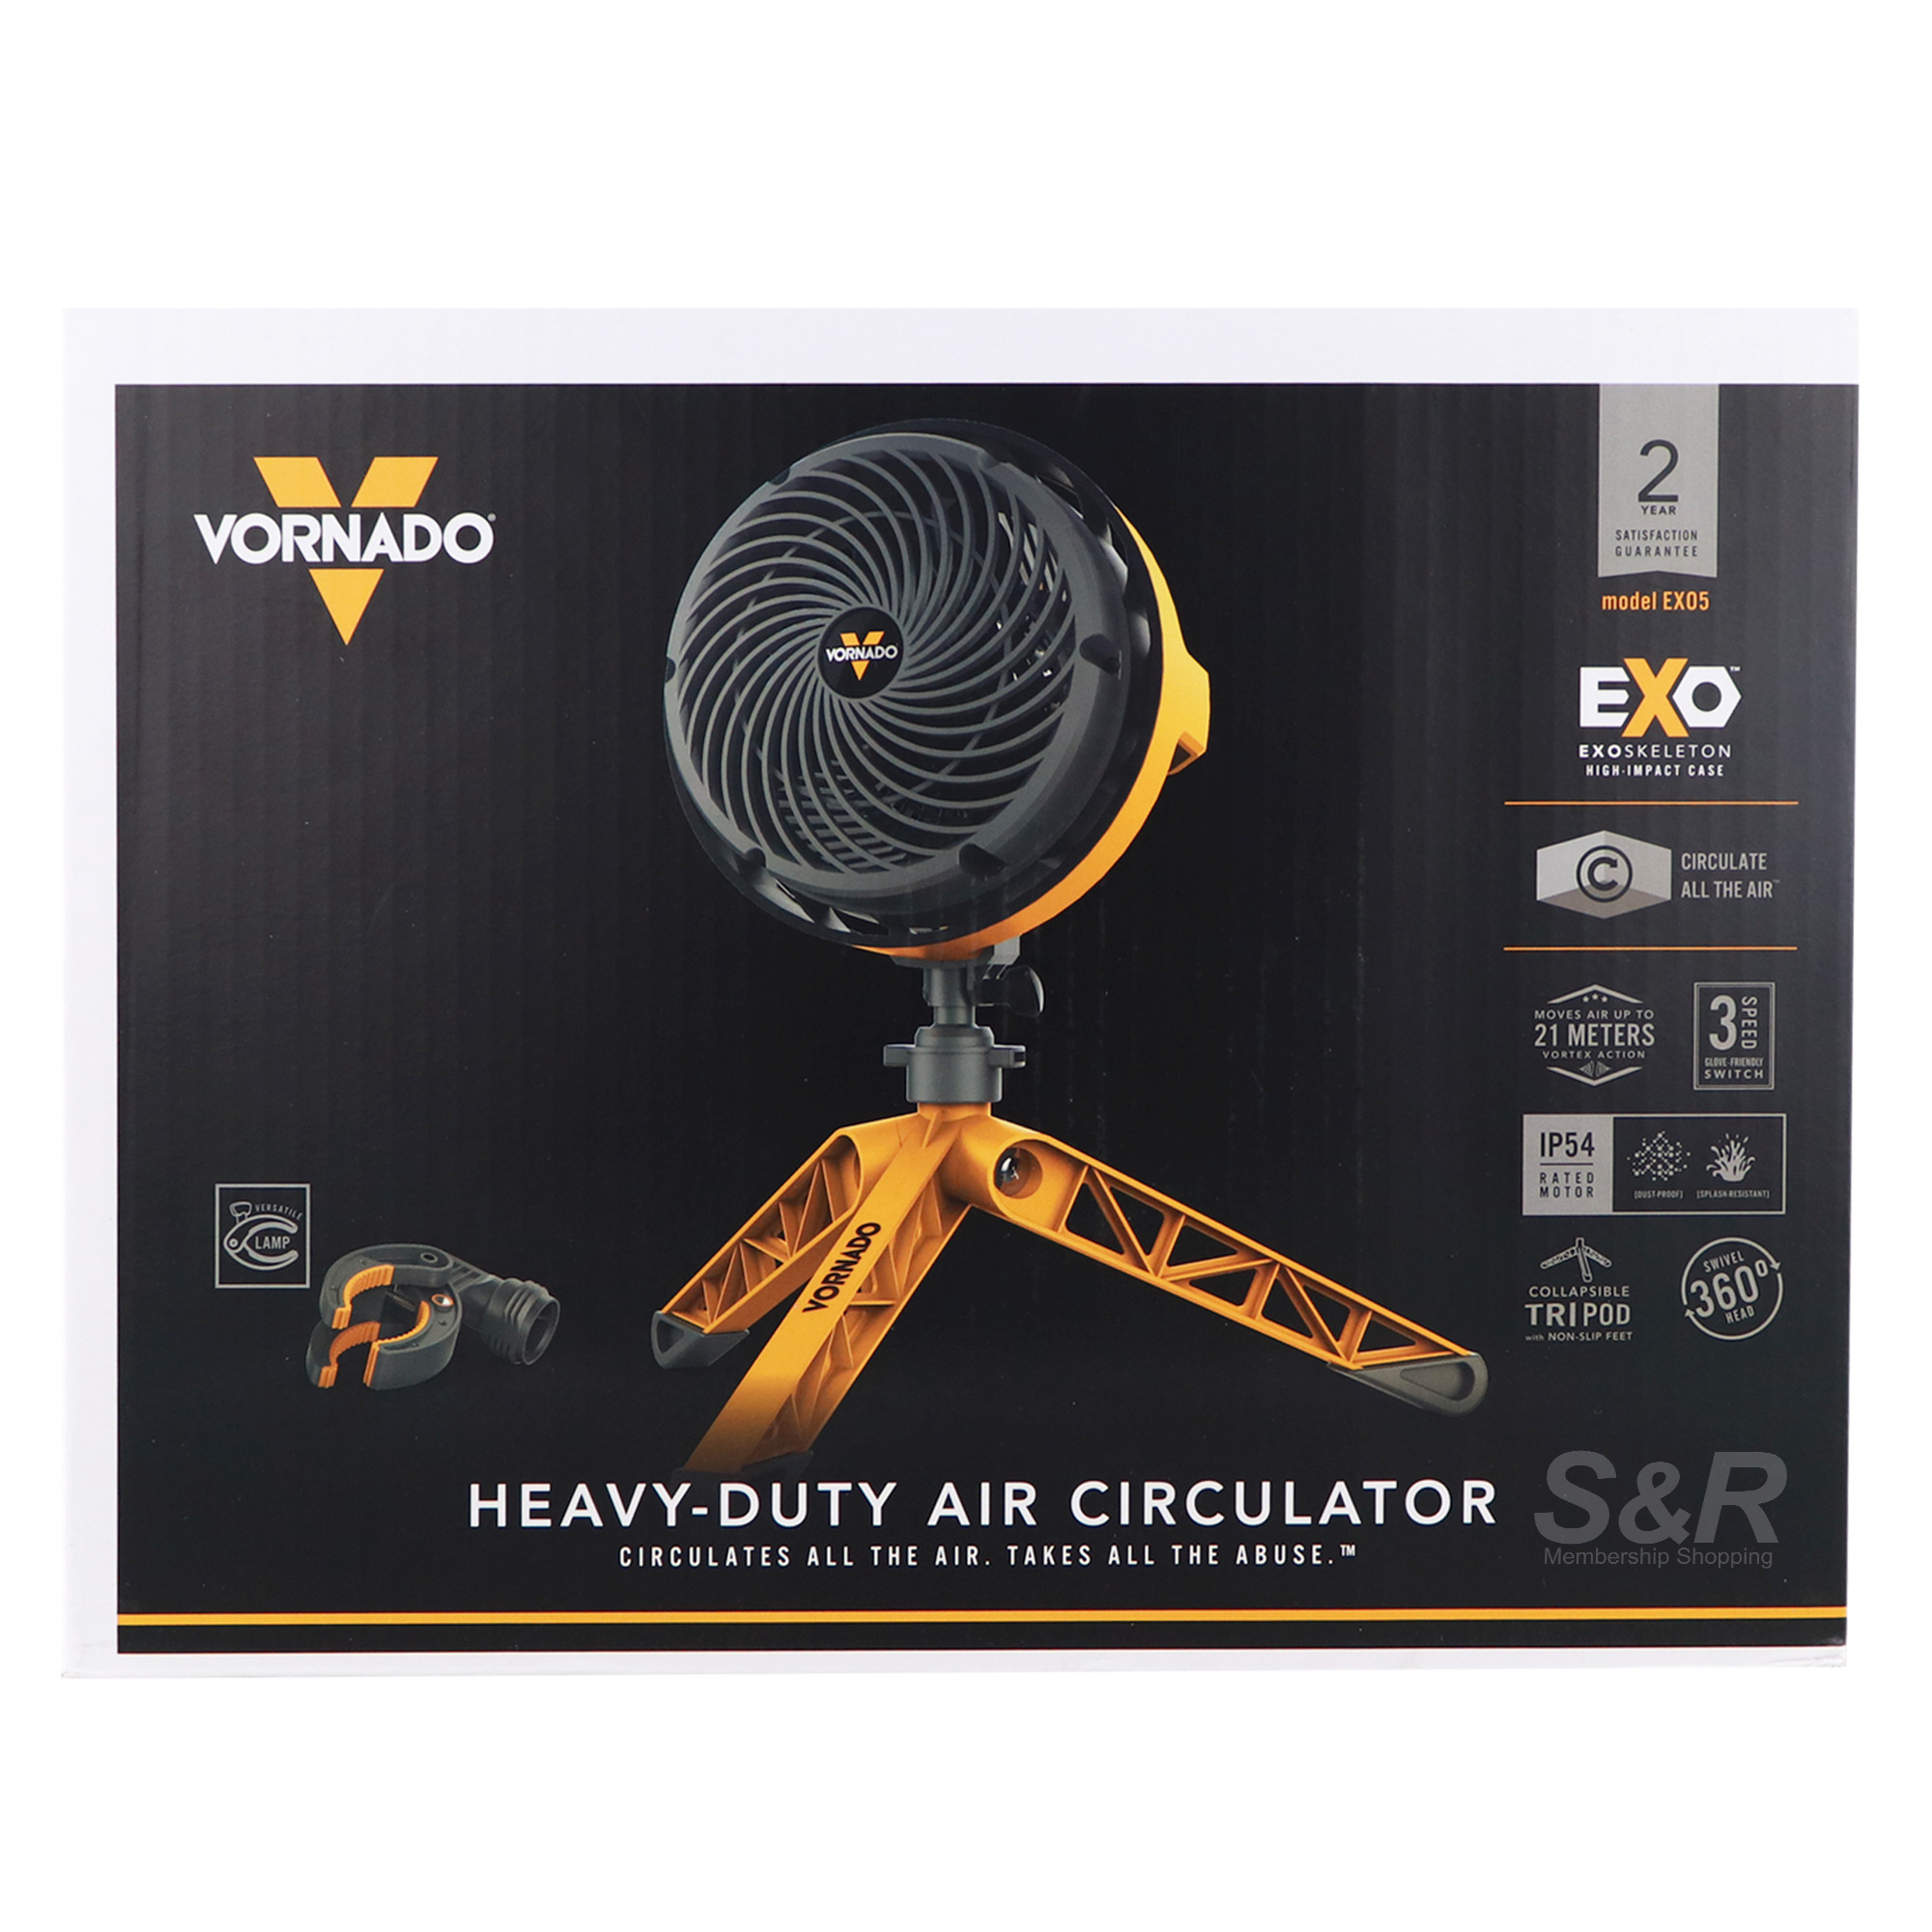 Vornado Heavy-Duty Air Circulator EXO5